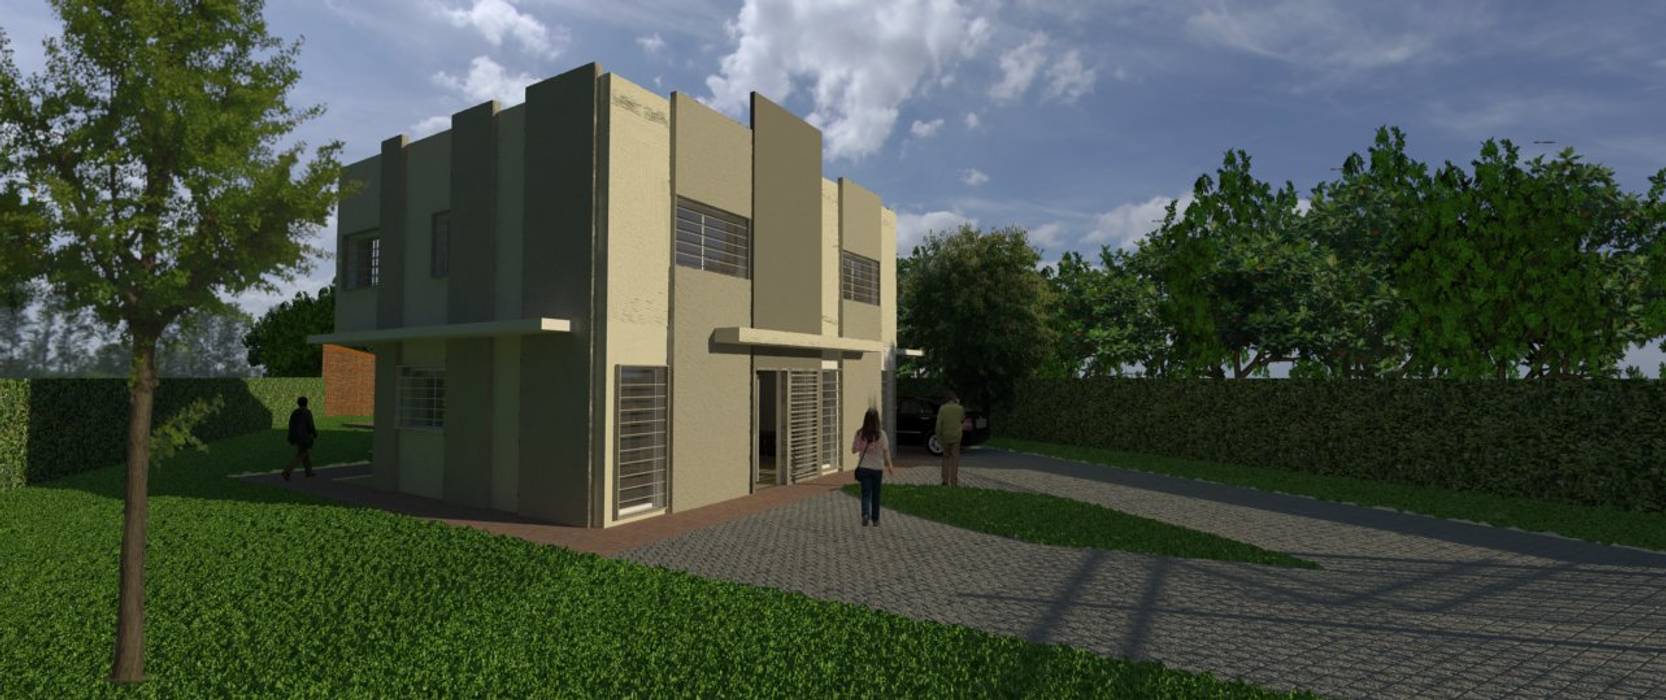 Anteproyecto Vivienda Suburbana, Oficina de Diseño y Arquitectura Oficina de Diseño y Arquitectura Casas minimalistas